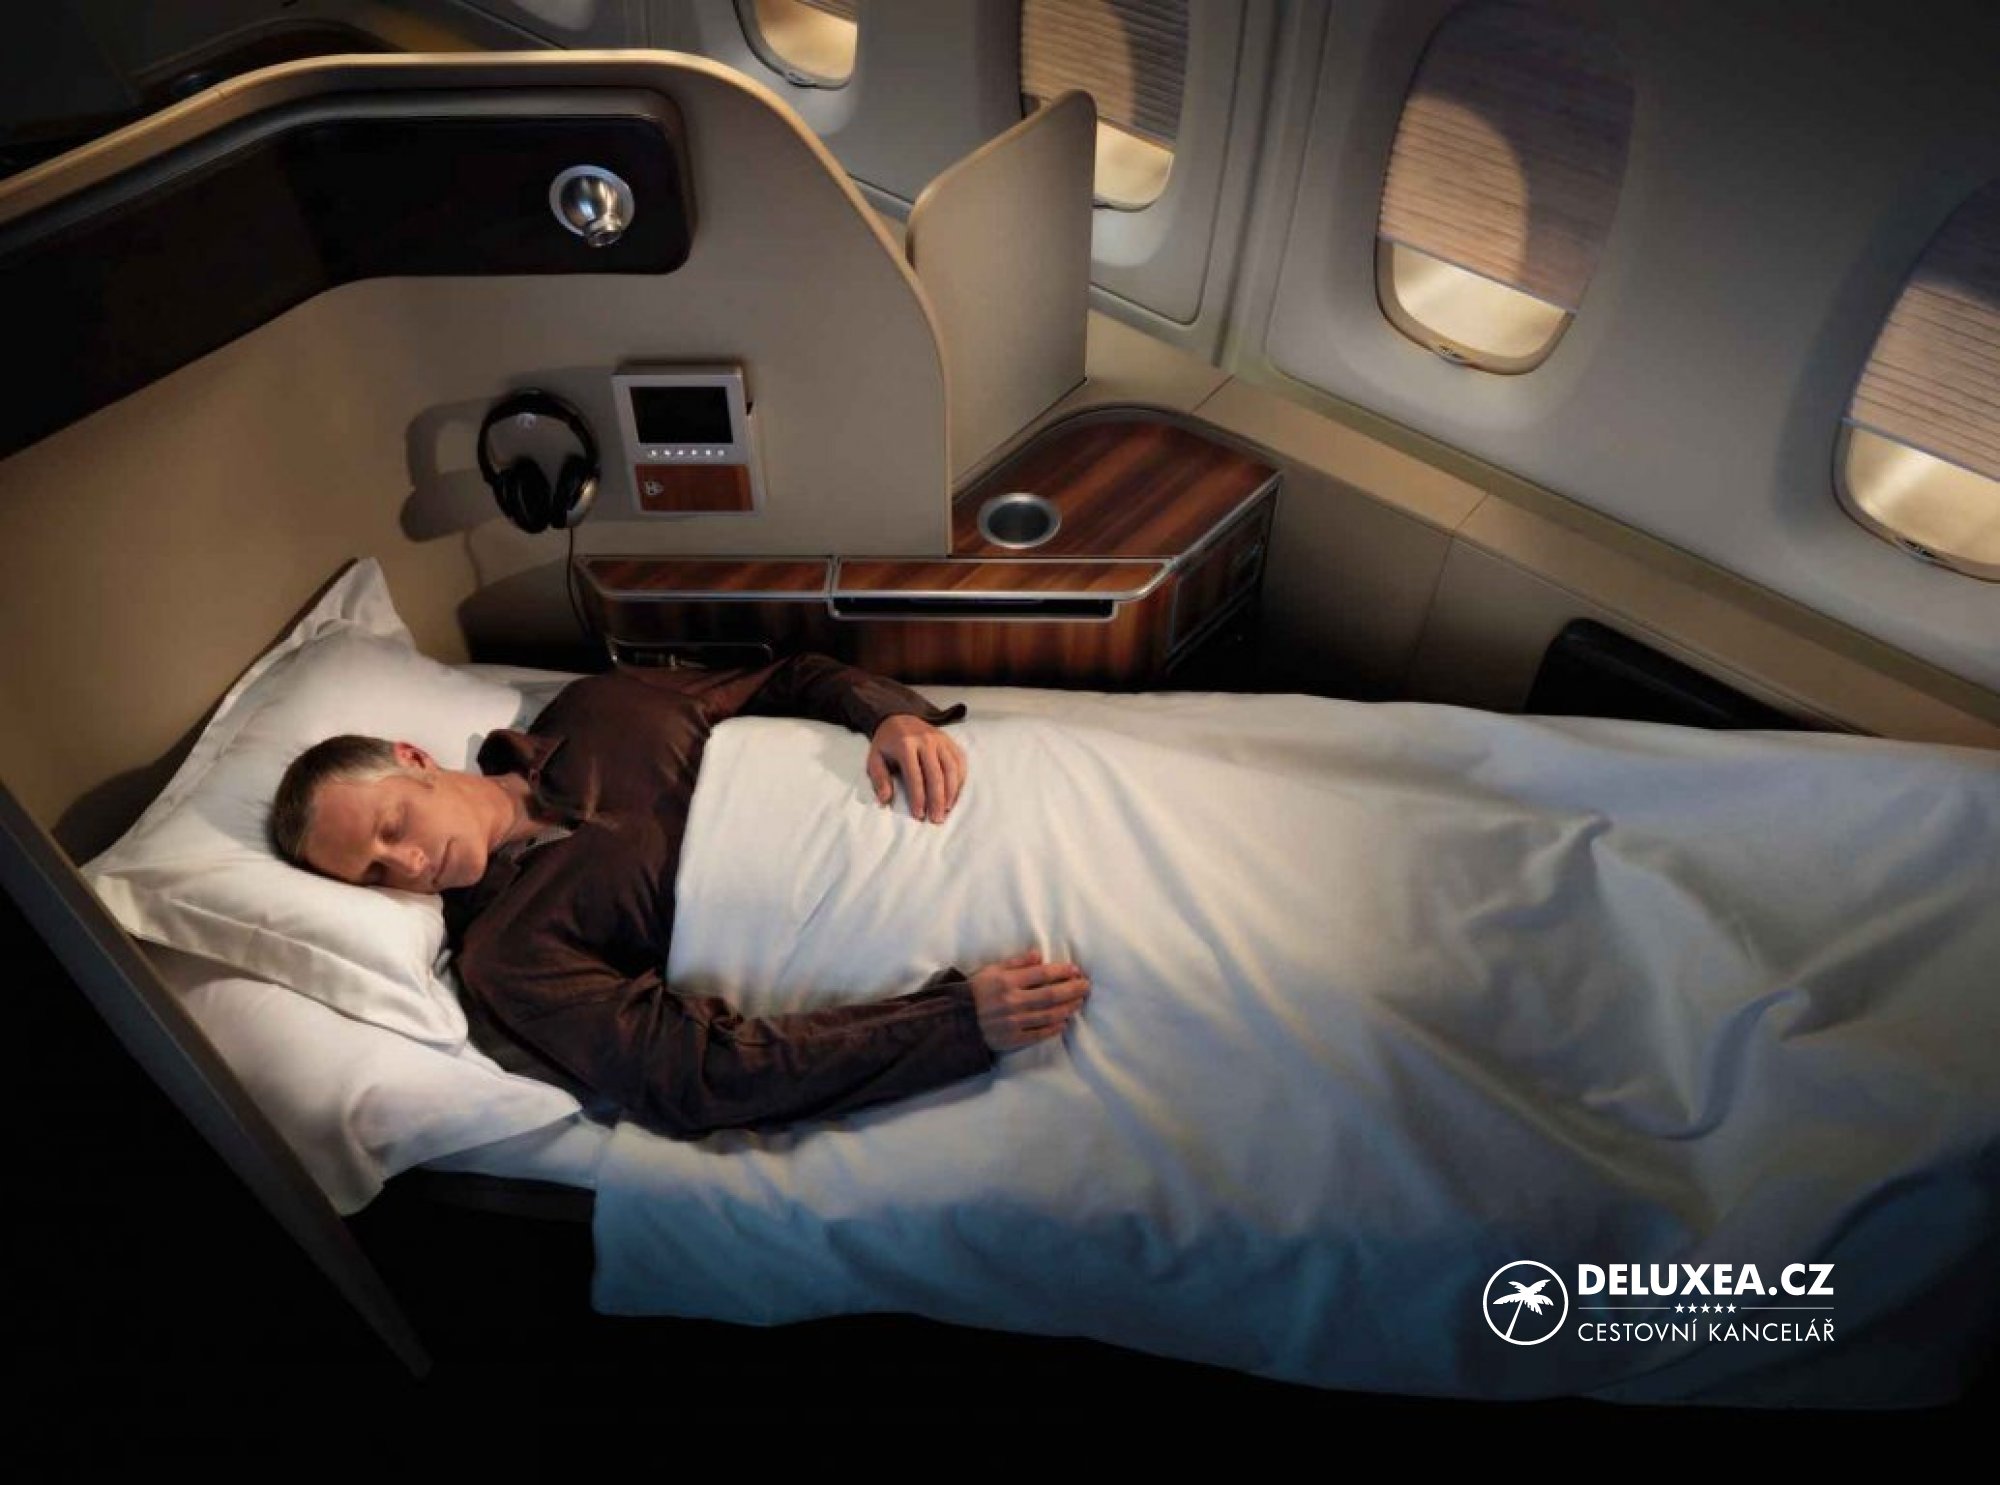 К чему снится видеть самолет. A380 Airbus бизнес класс кровати. Airbus a380 Qantas первый класс. Лежачие места в самолете. Спальные места в самолете.